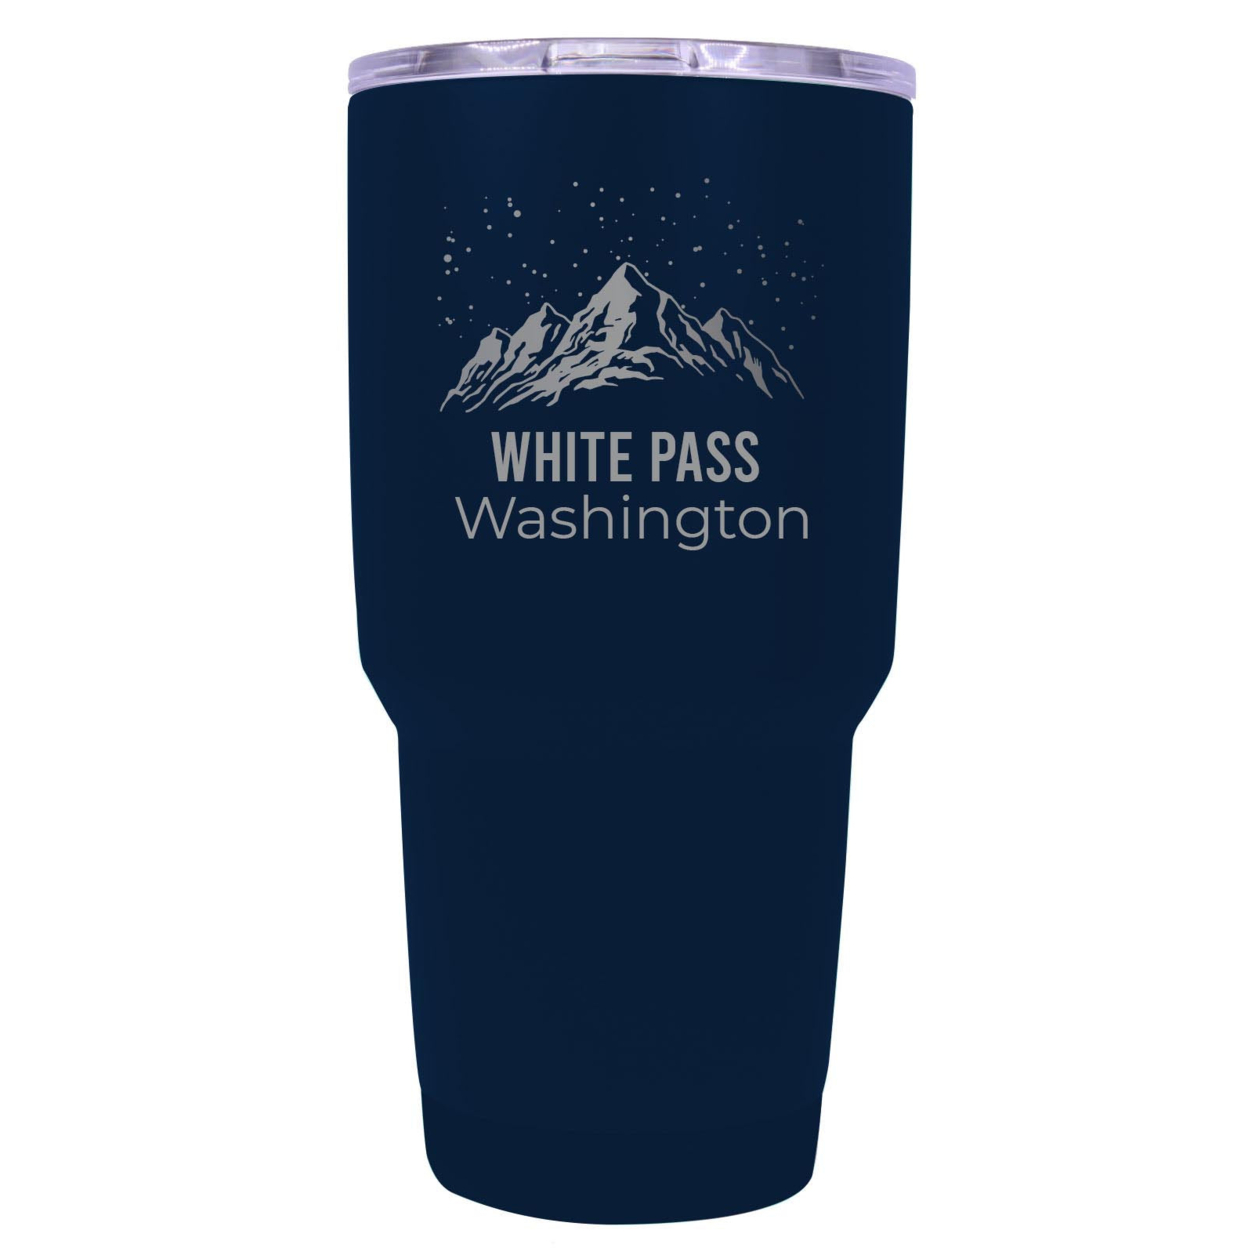 White Pass Washington Ski Snowboard Winter Souvenir Laser Engraved 24 Oz Insulated Stainless Steel Tumbler - Navy